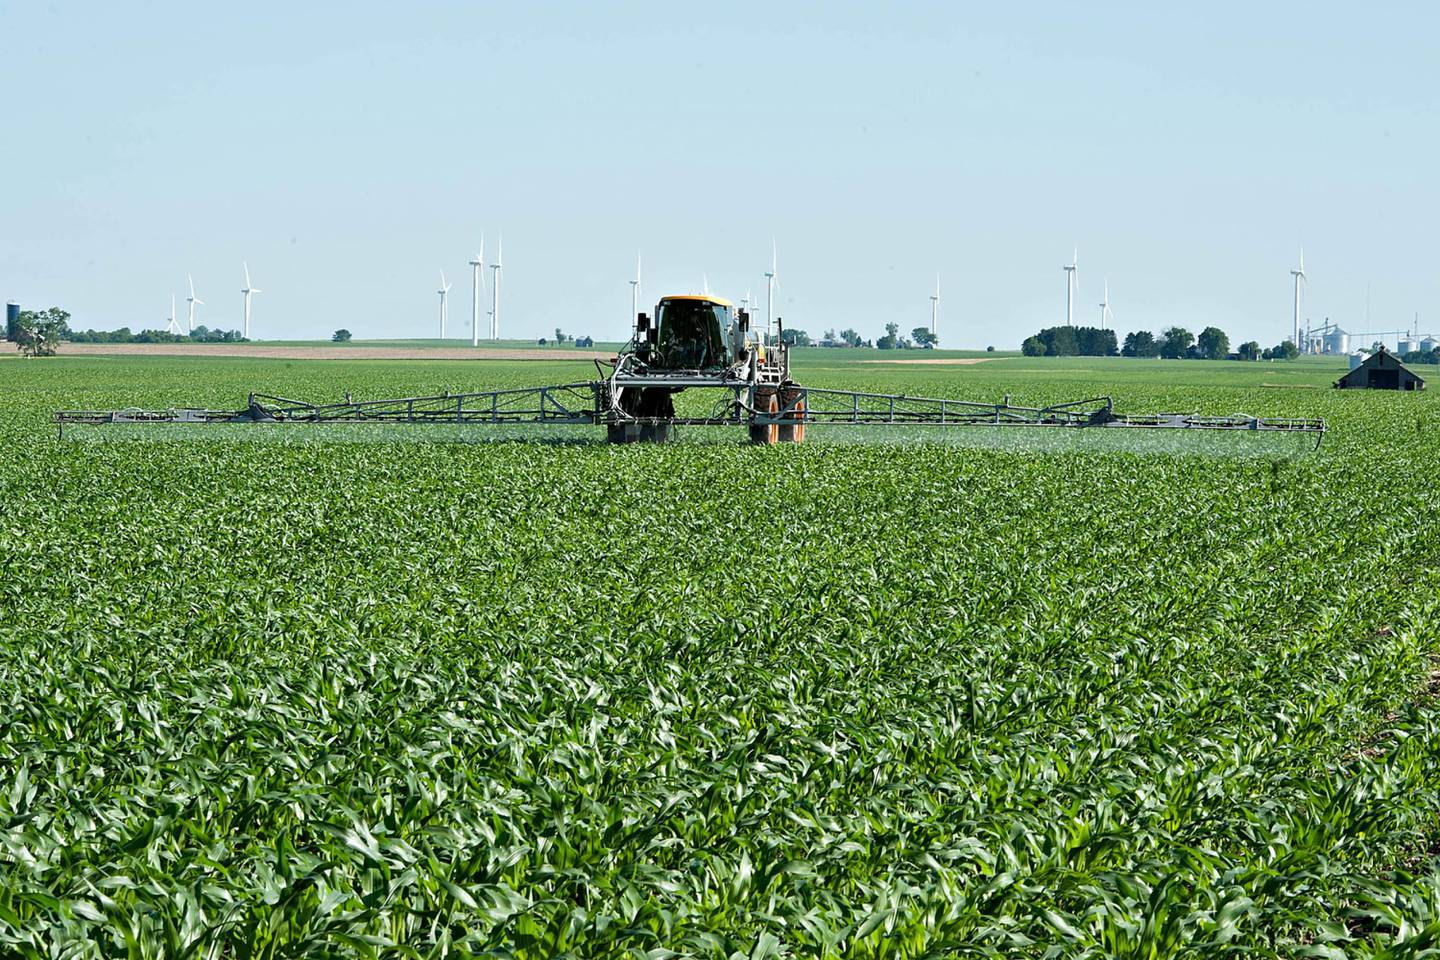 Un agricultor rocía las plantas de maíz con una niebla de herbicida, fungicida y fertilizante utilizando un pulverizador de Hagie Manufacturing Co. en Kasbeer, Illinois, Estados Unidos, el lunes 13 de junio de 2011.